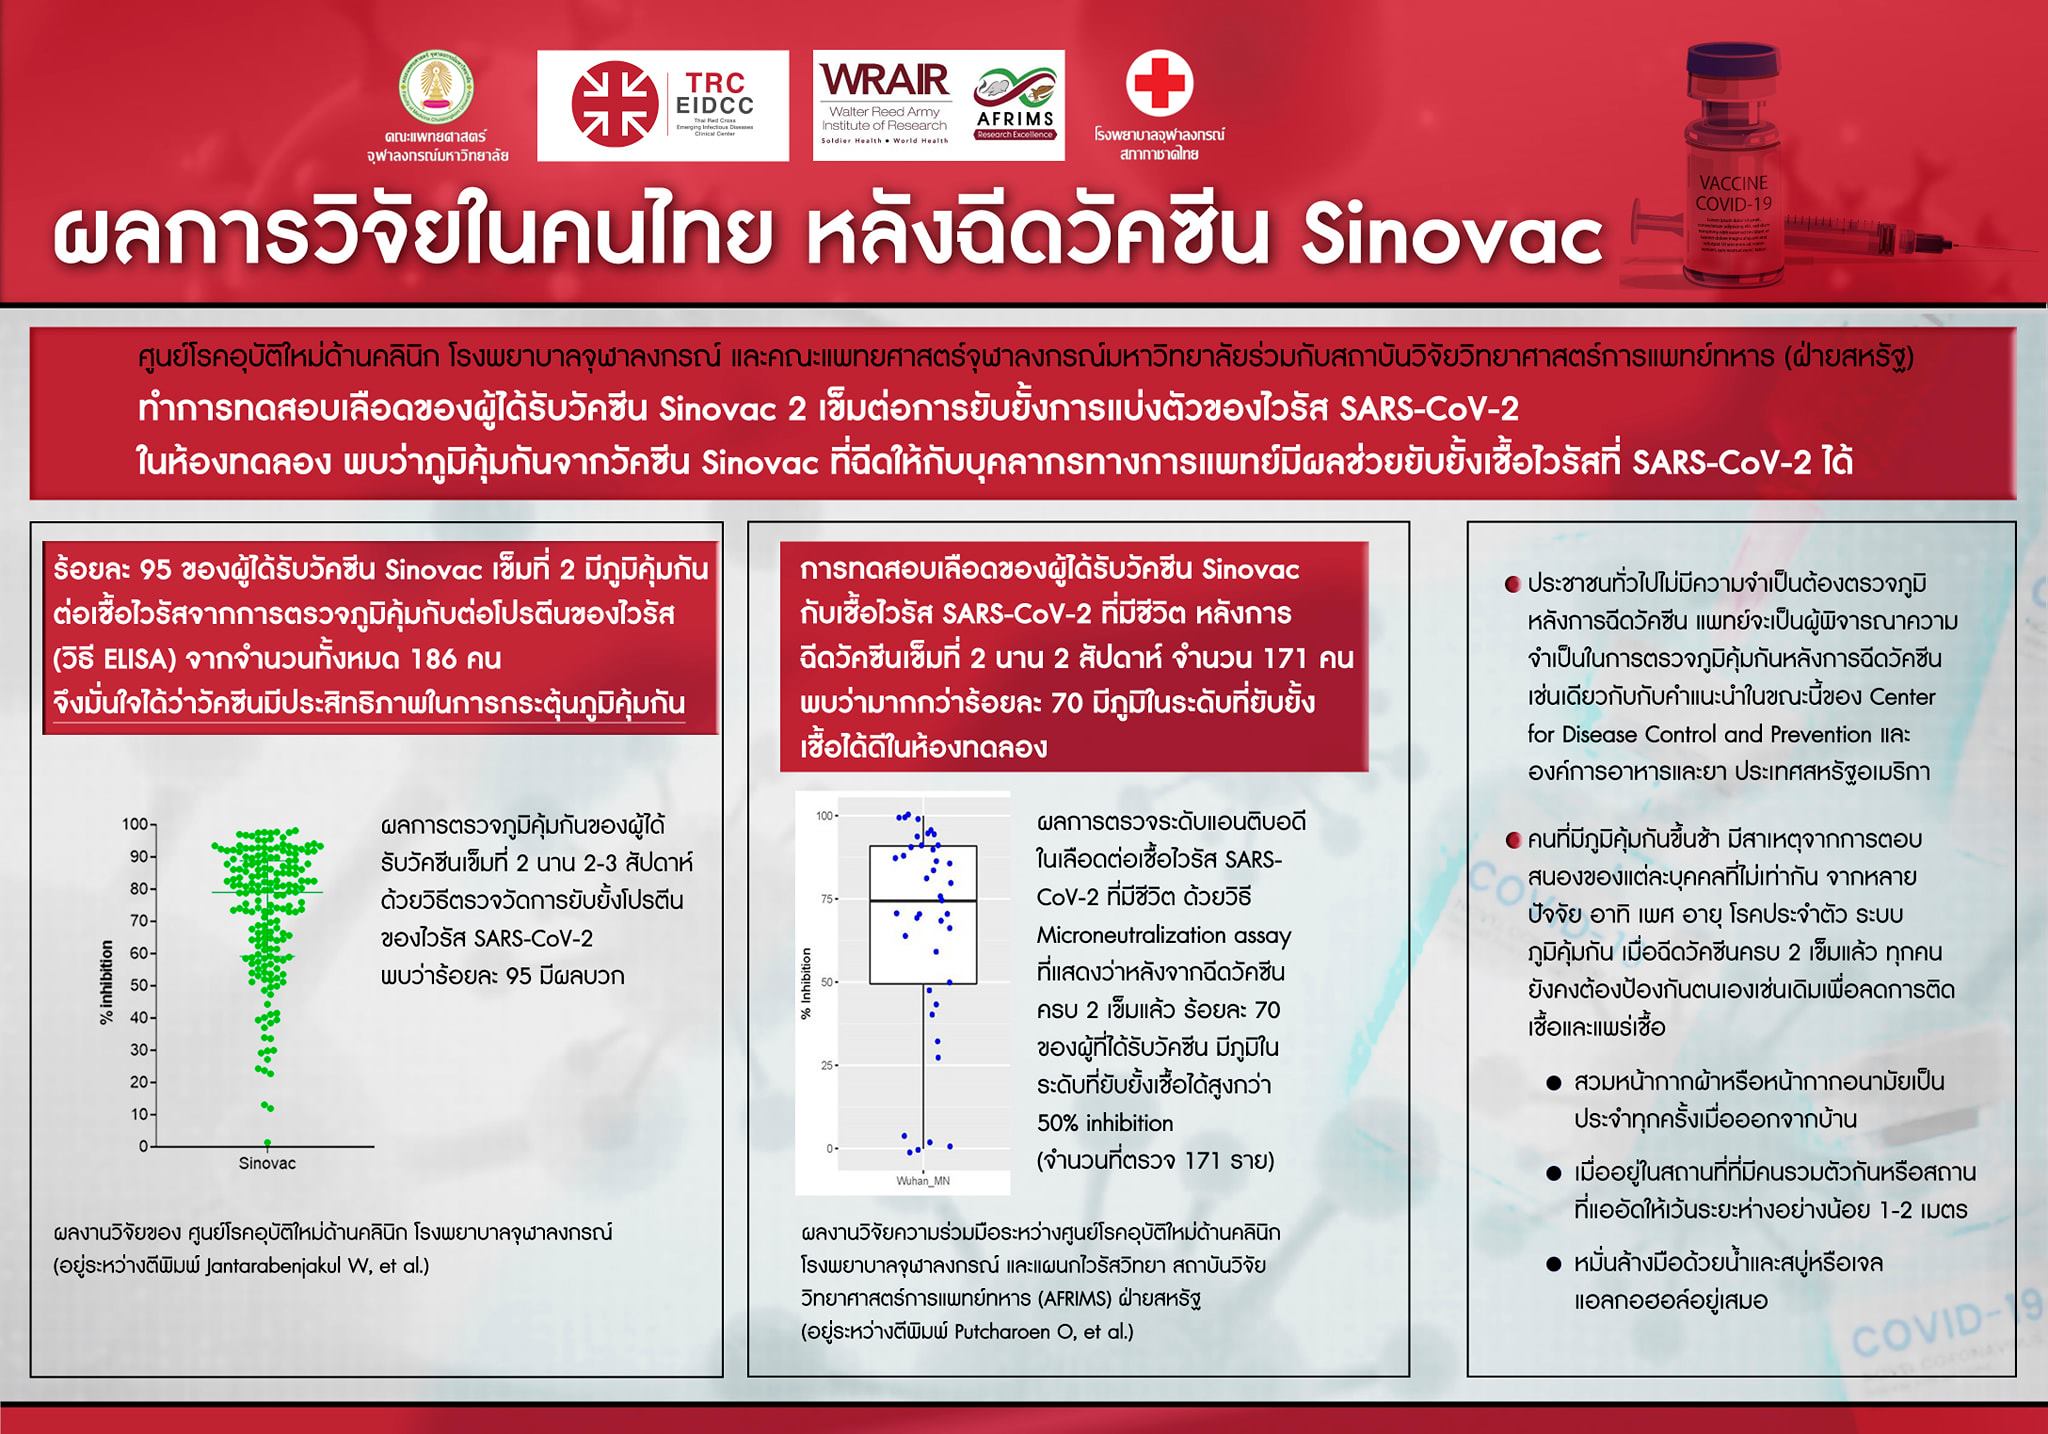 ผลการวิจัยในคนไทย หลังฉีดวัคซีน Sinovac